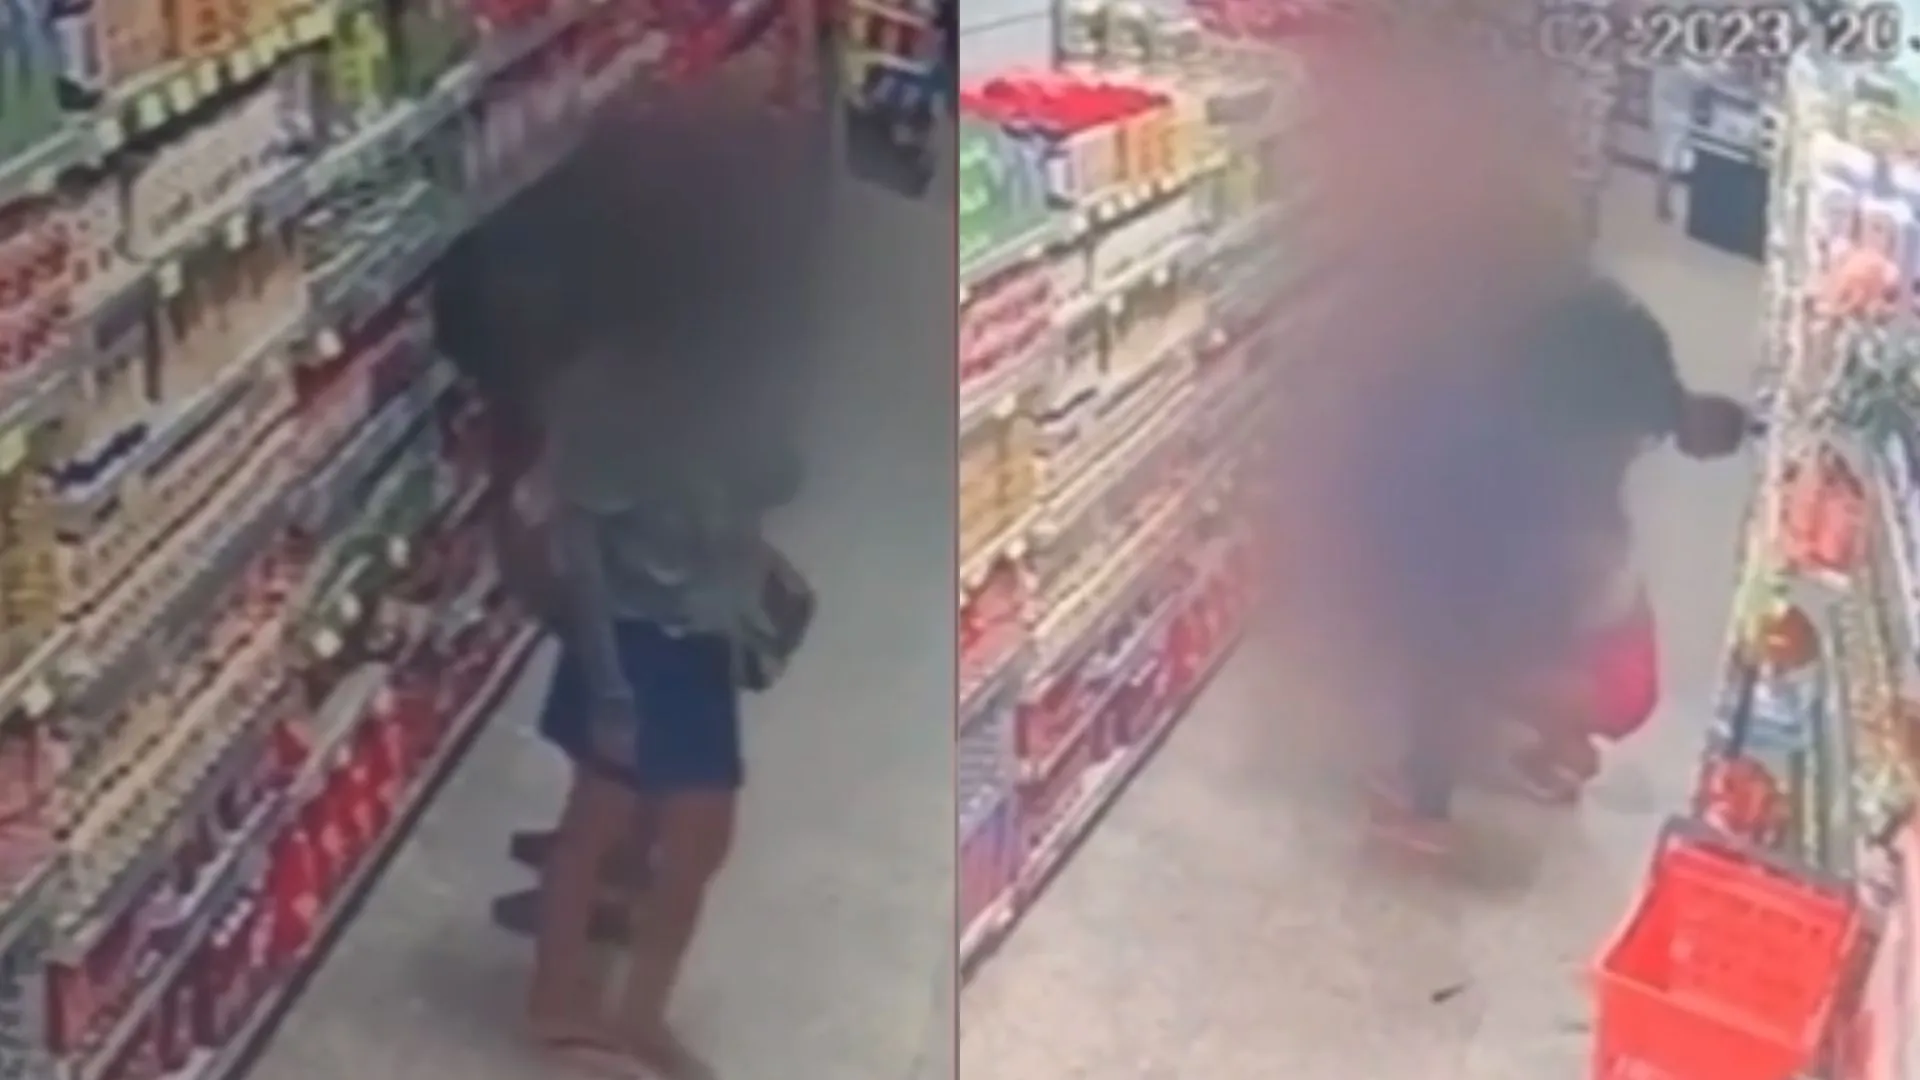 O homem importunou duas mulheres dentro de um supermercado